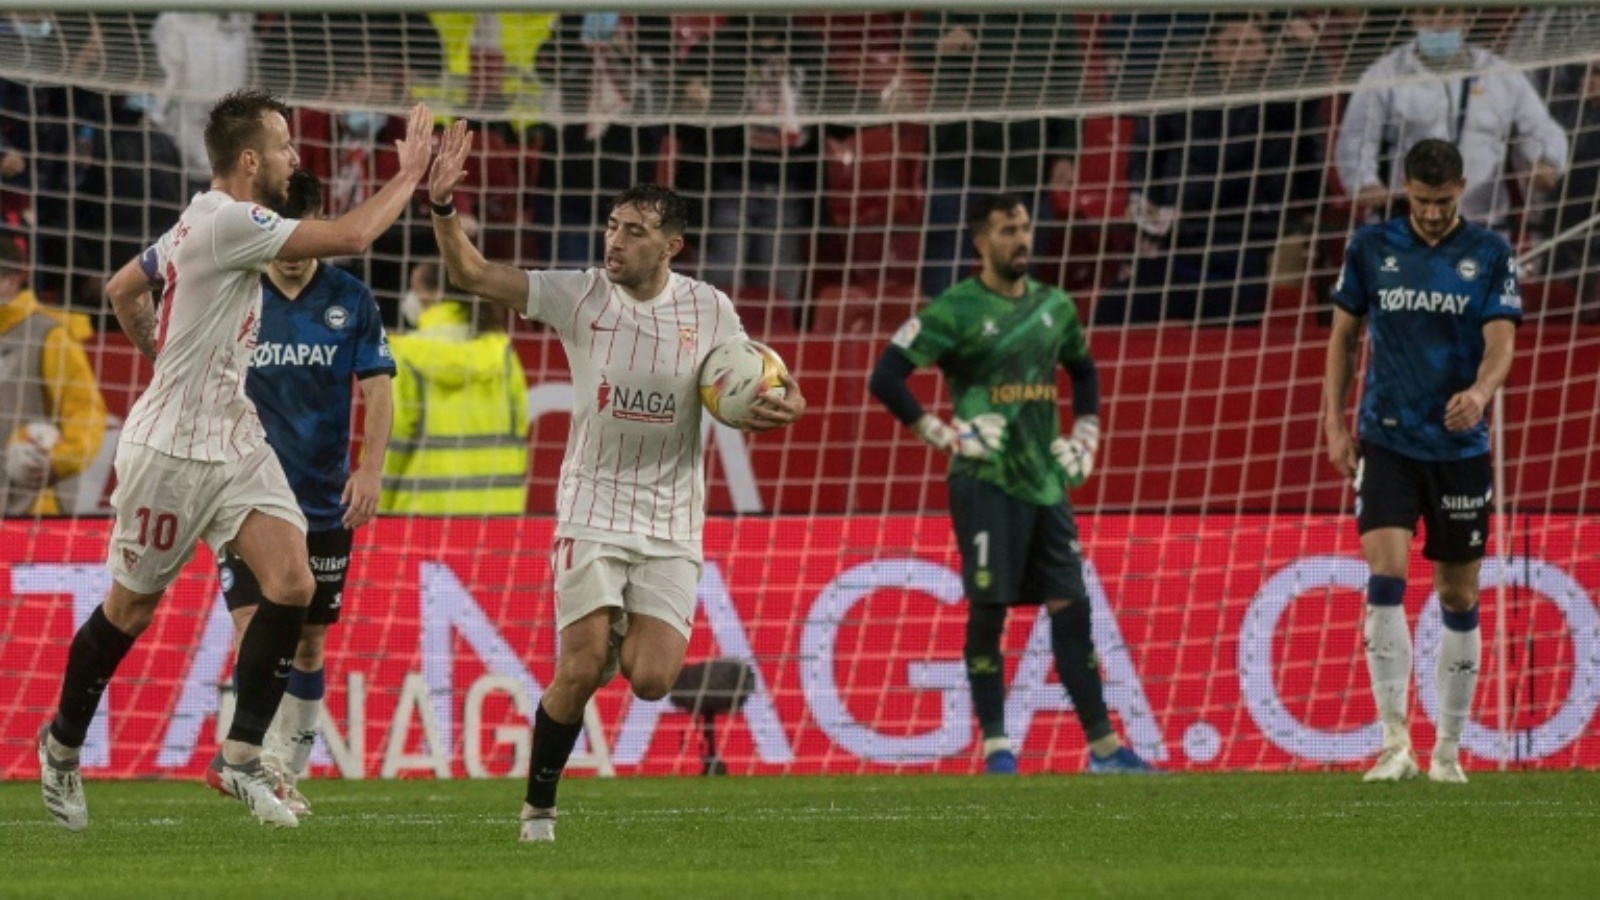 الكرواتي إيفان راكيتيتش (يسار) يحتفل مع وزميله منير الحدادي بتسجيل هدف التعادل لإشبيلية في مرمى ديبورتيفو ألافيس في المرحلة الرابعة عشرة من الدوري الإسباني لكرة القدم في 20 تشرين الثاني/نوفمبر 2021.